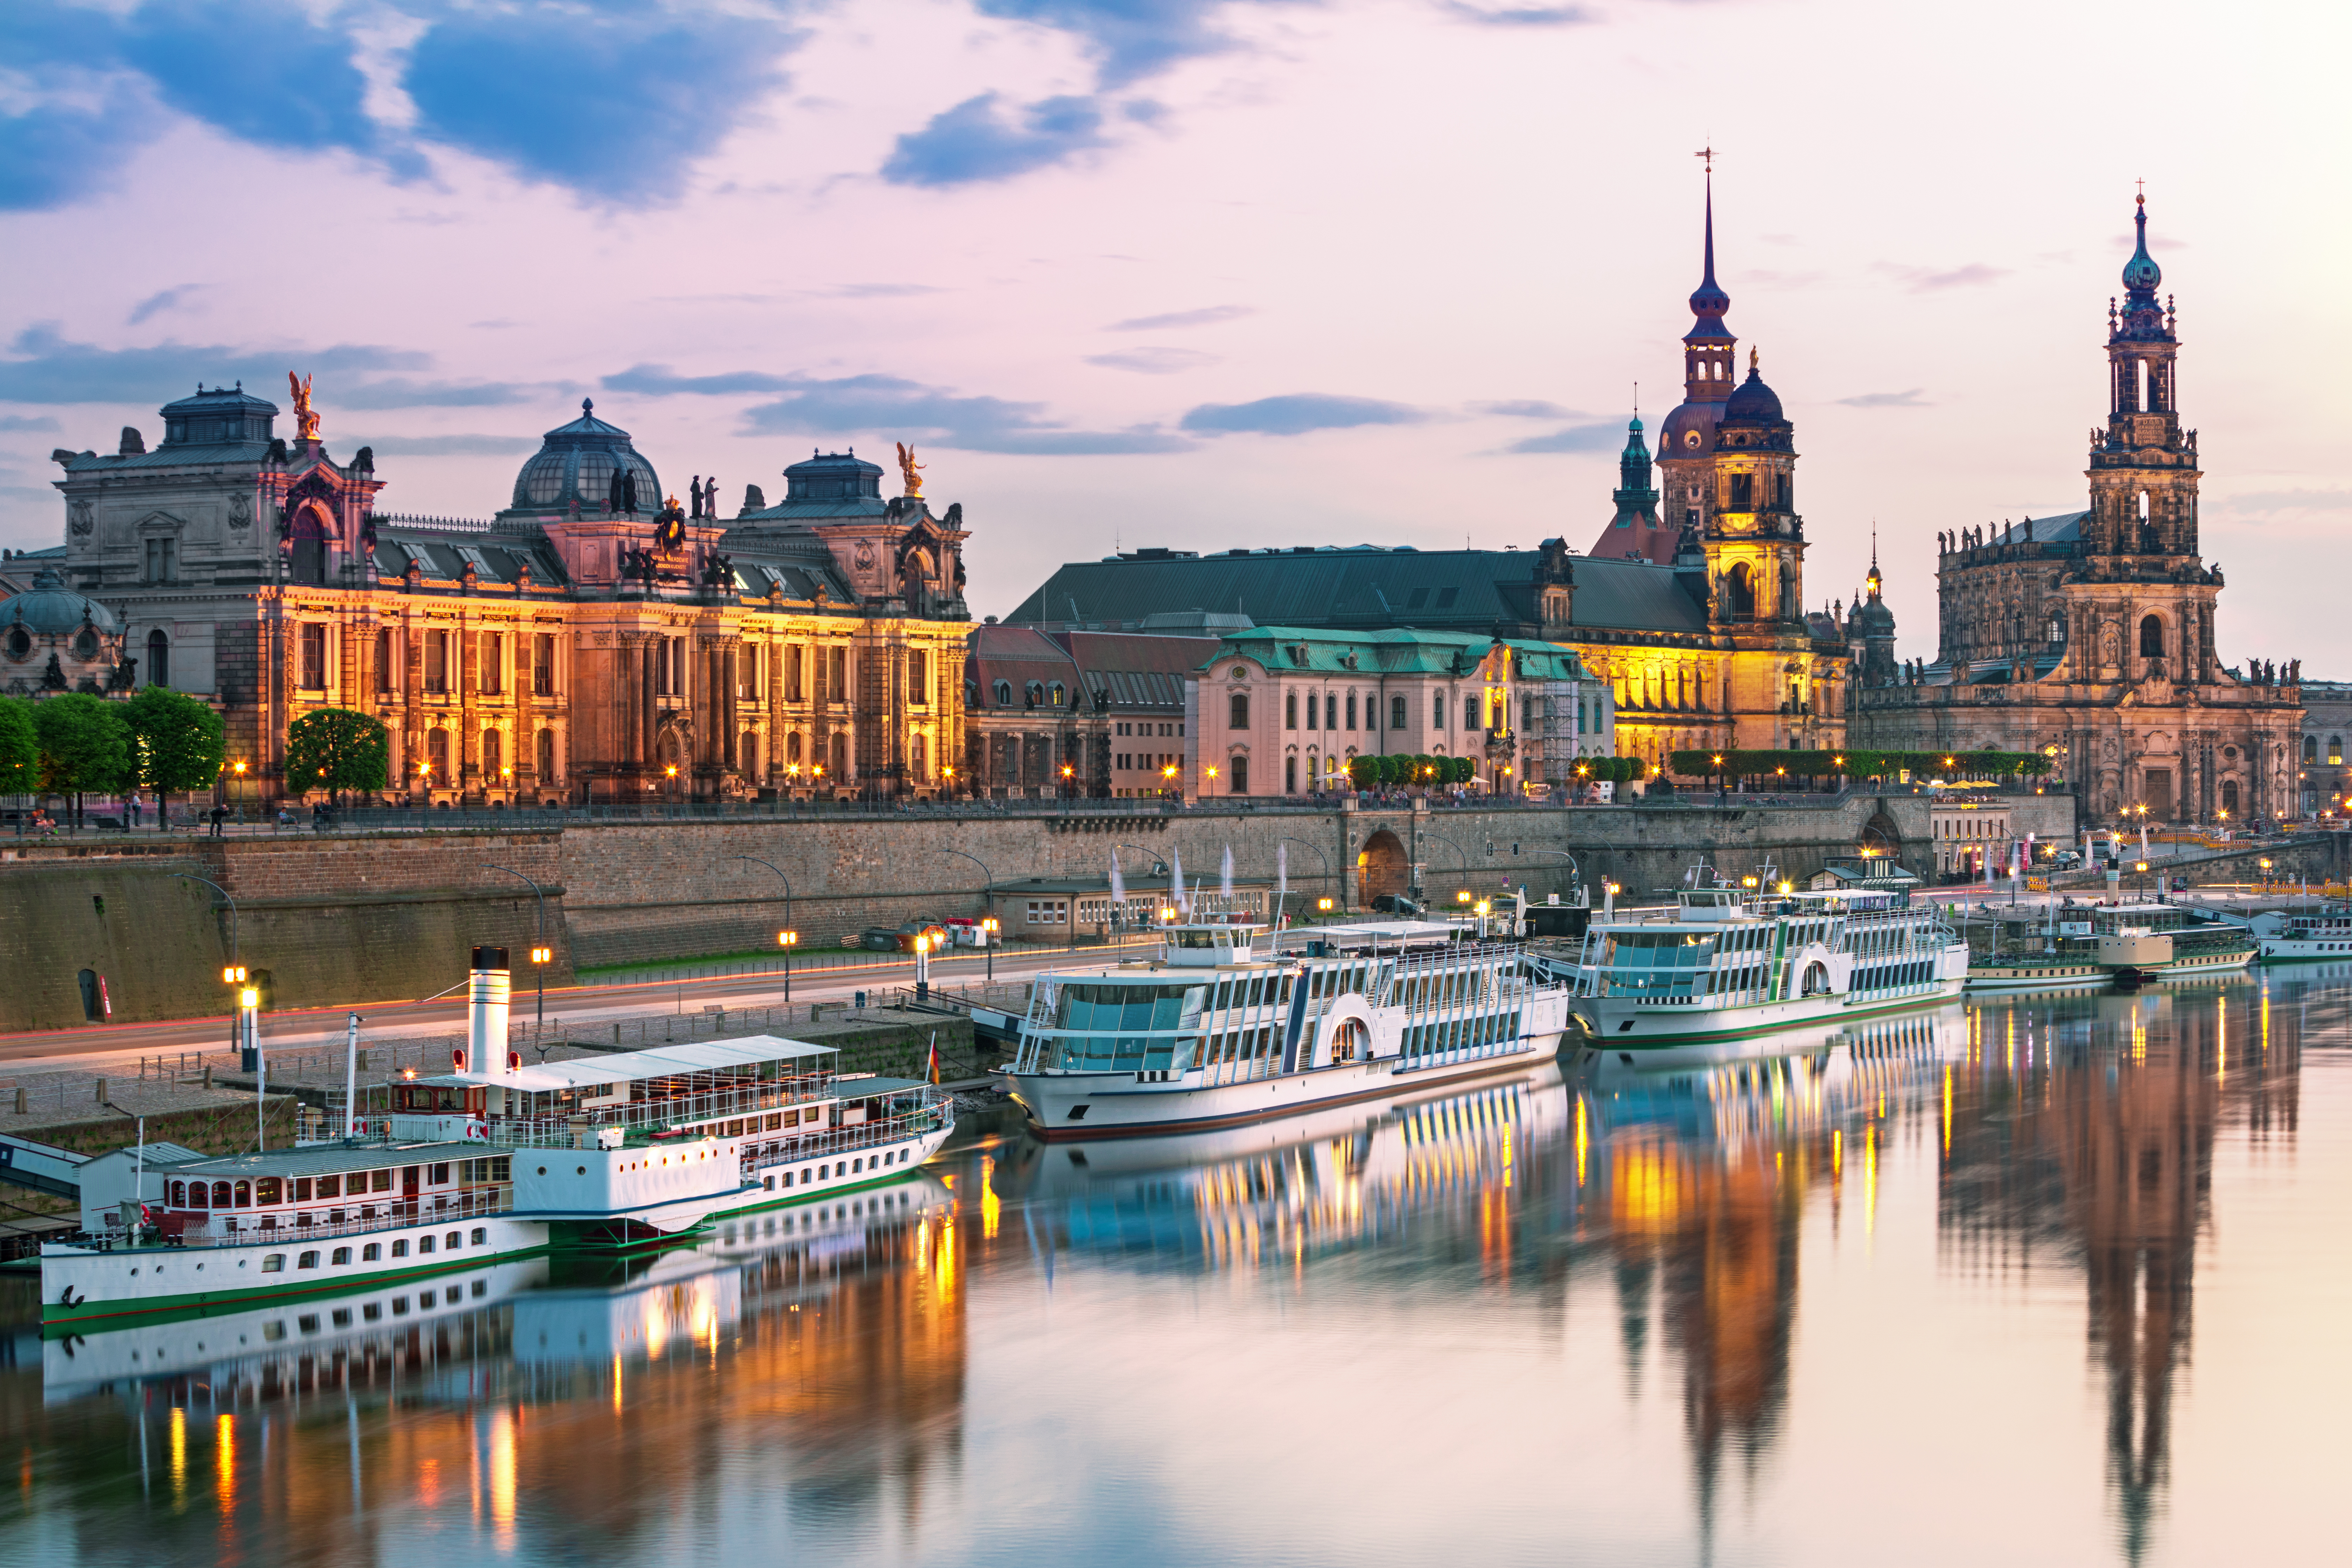 Дрезден, немецкий город, куда на проживание могут переехать иностранцы